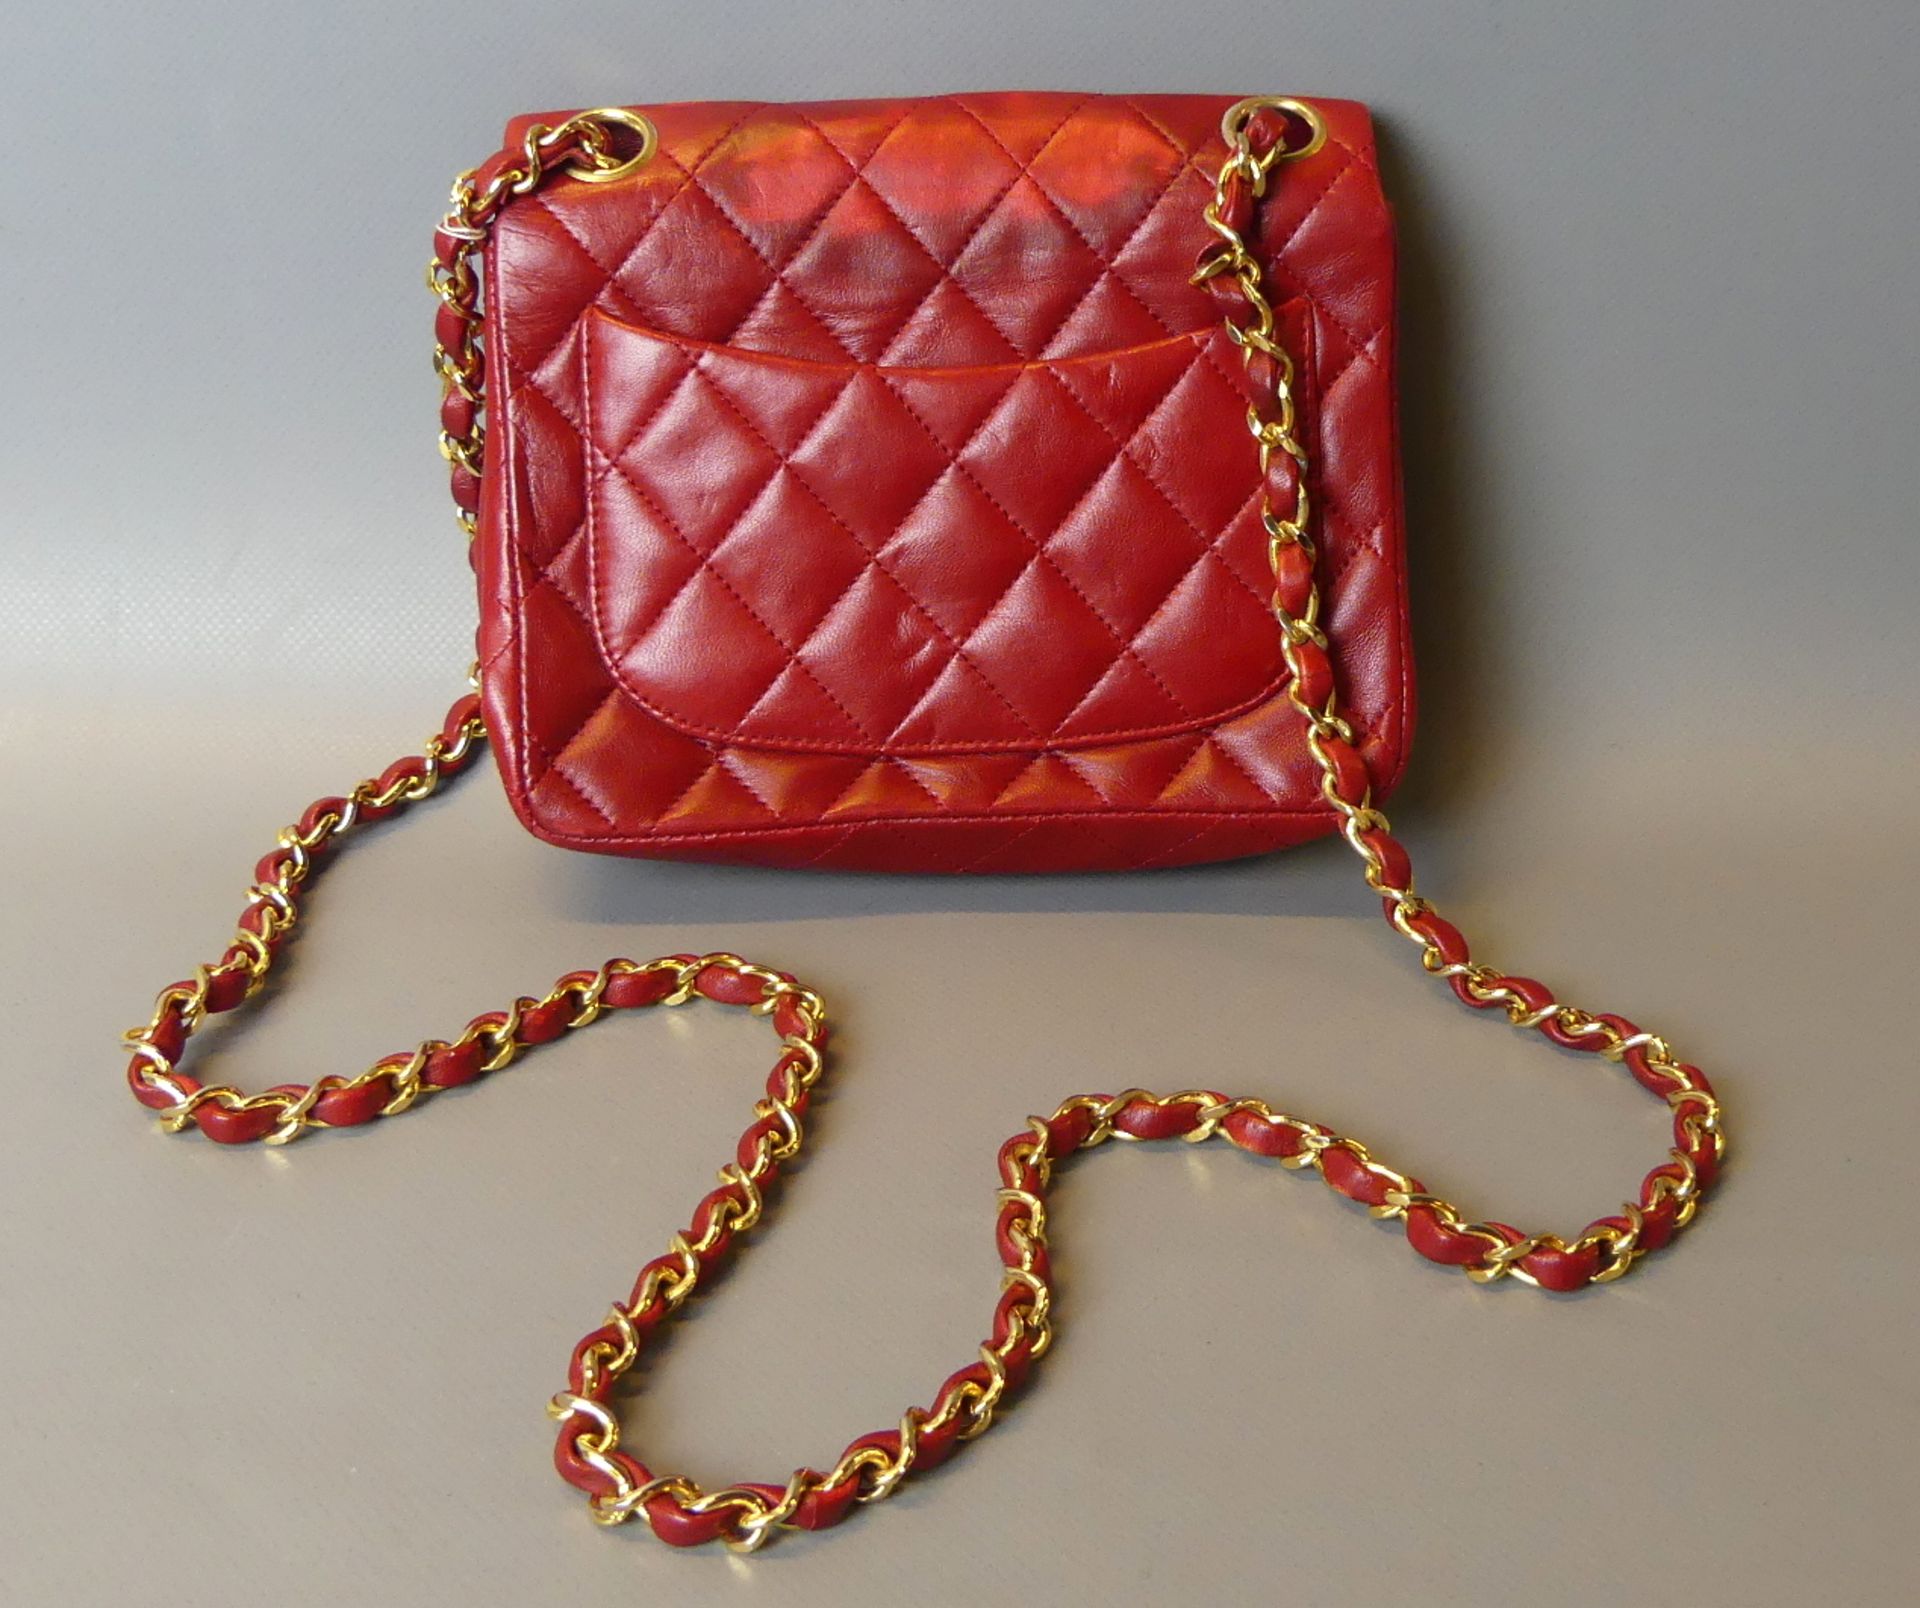 Chanel, Paris, Damenhandtasche, "Mini Flap Bag" rotes Leder, - Bild 3 aus 5